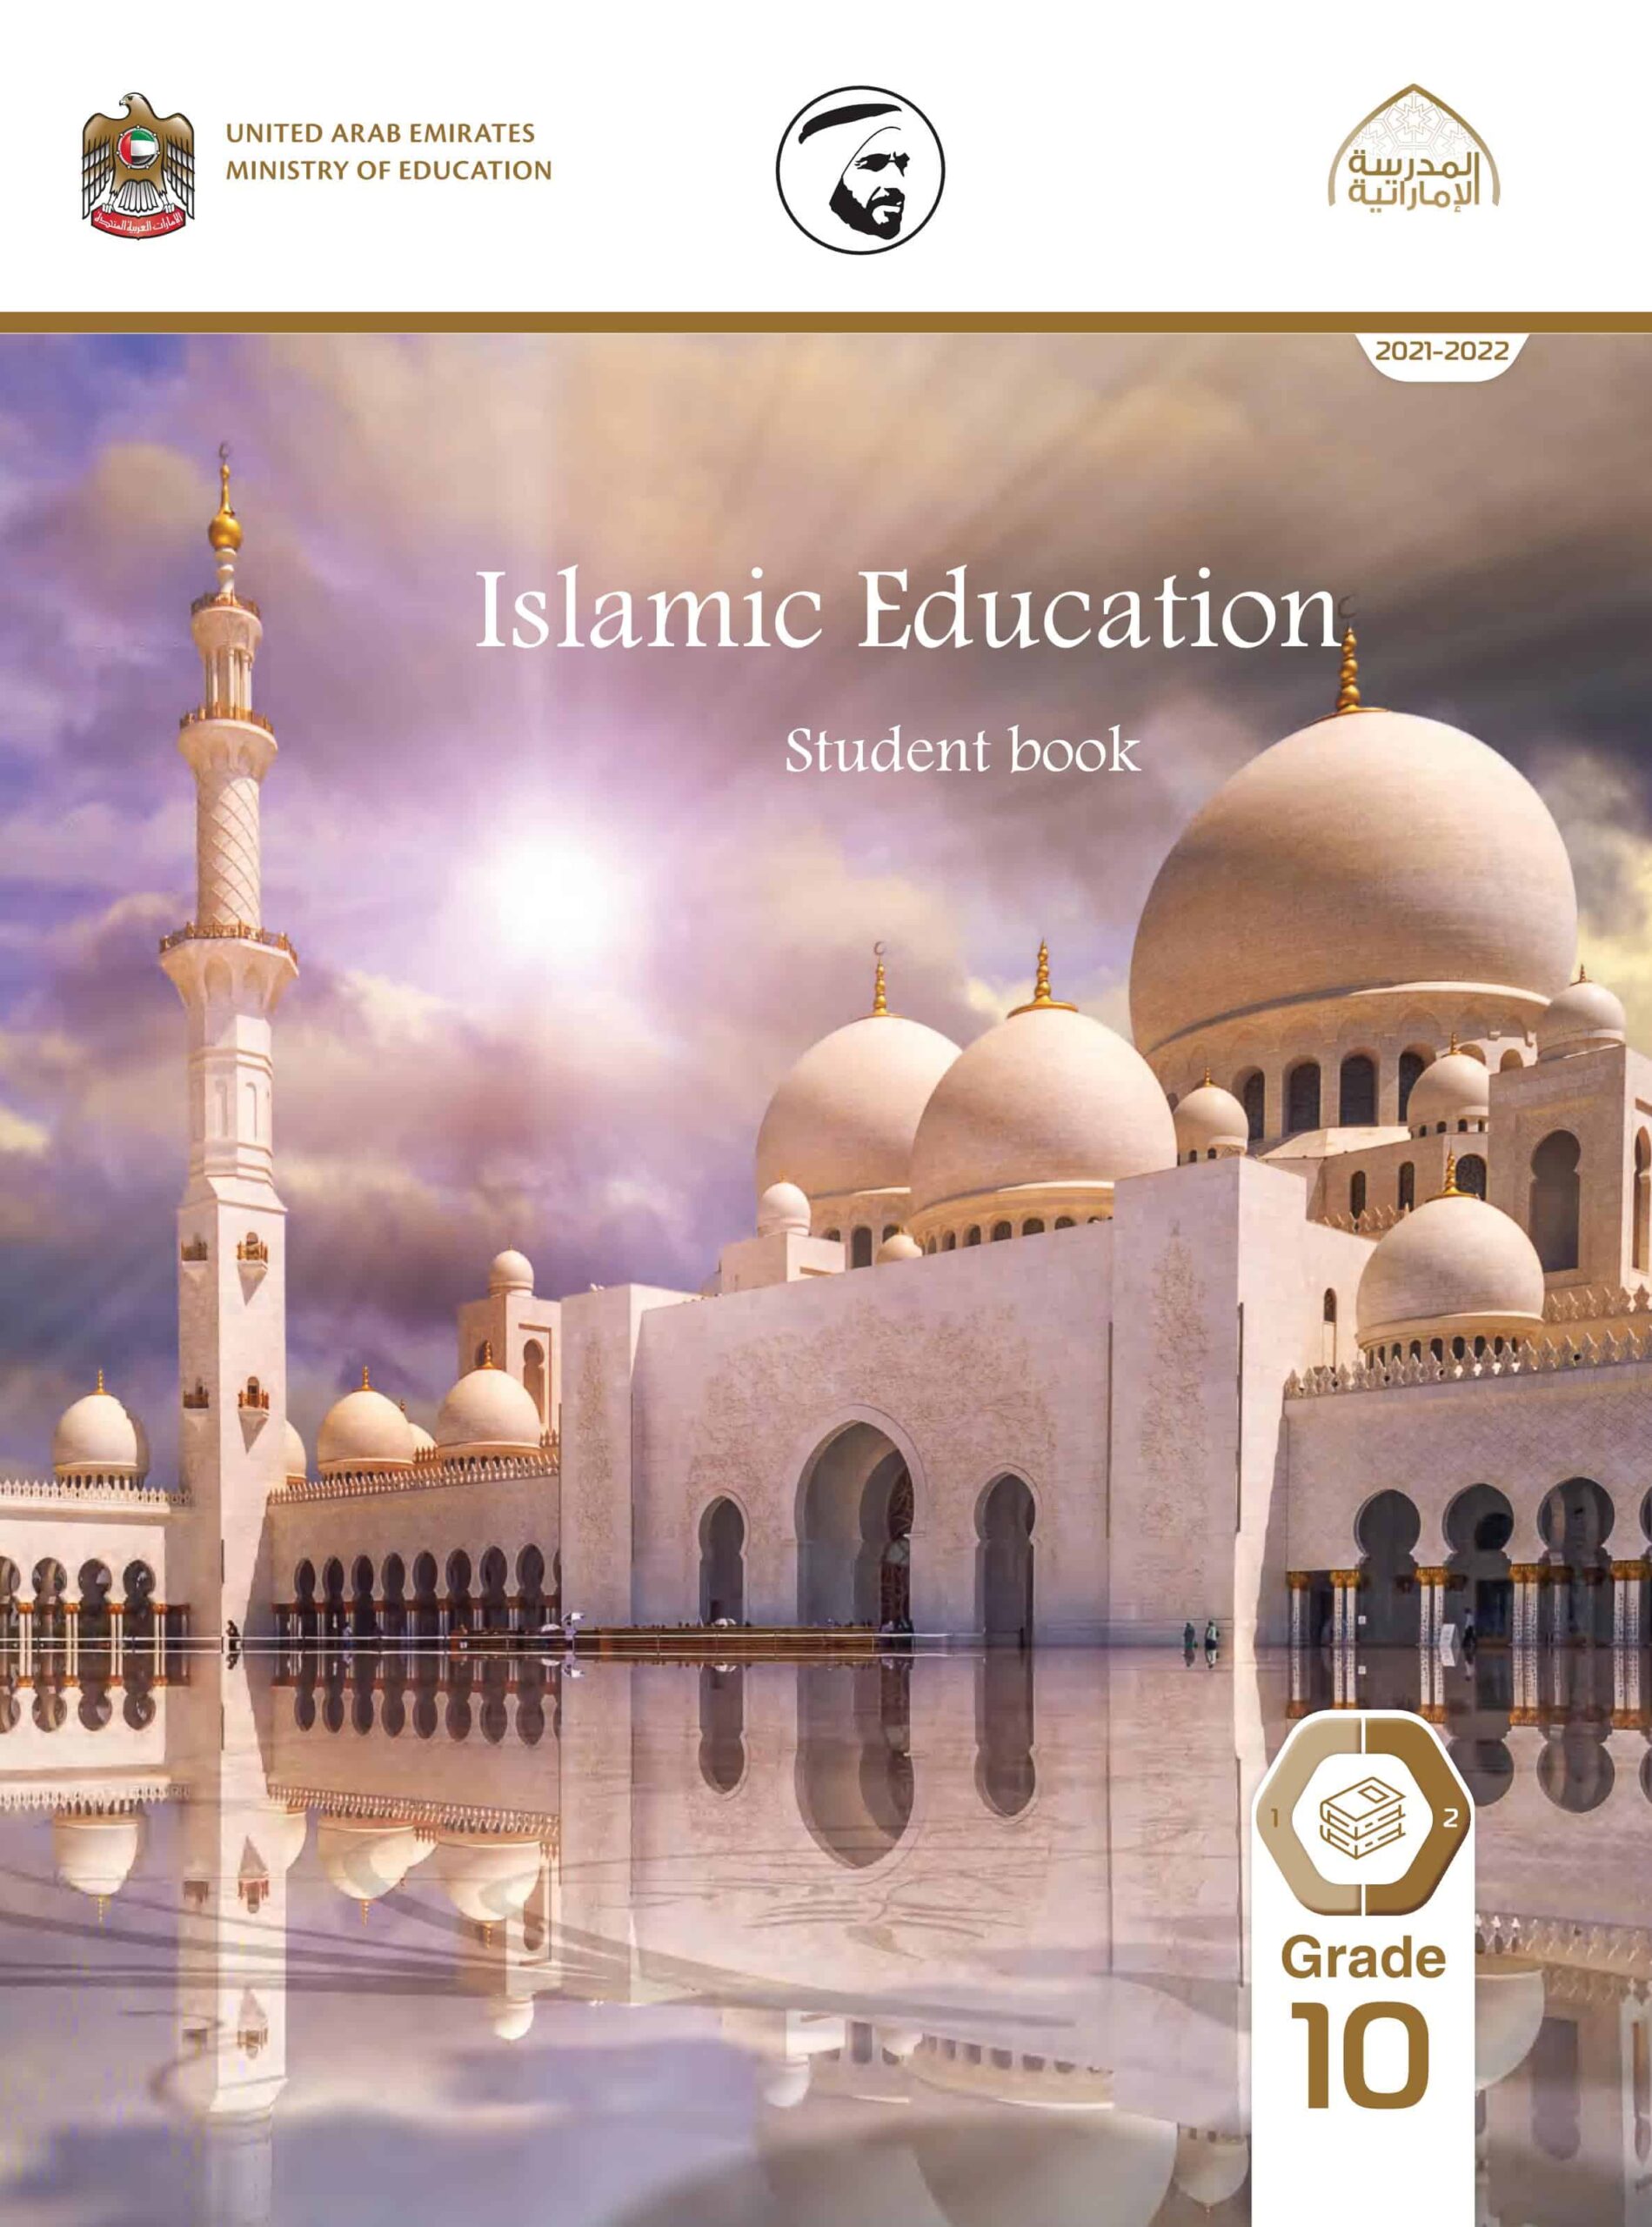 كتاب الطالب لغير الناطقين باللغة العربية التربية الإسلامية الصف العاشر الفصل الدراسي الثاني 2021-2022